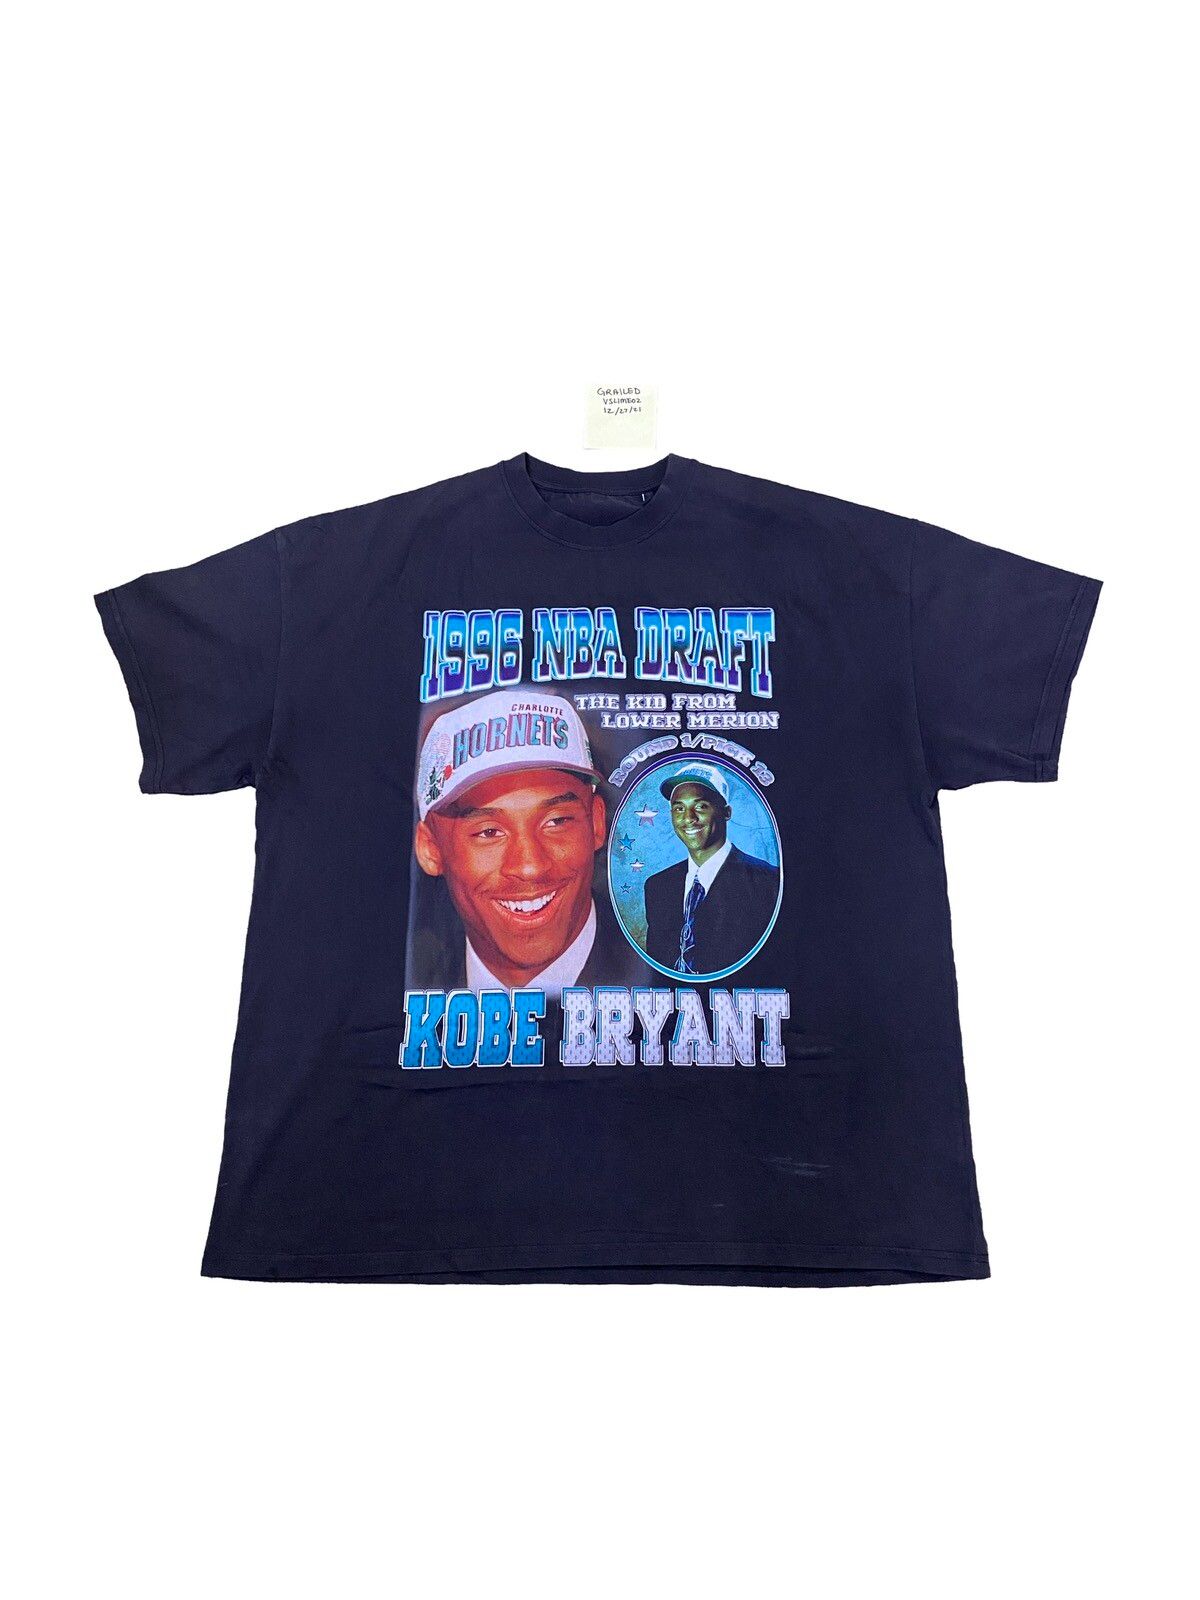 Vintage Kobe Bryant Draft Tee X Grace Court Co Size US XL / EU 56 / 4 - 1 Preview